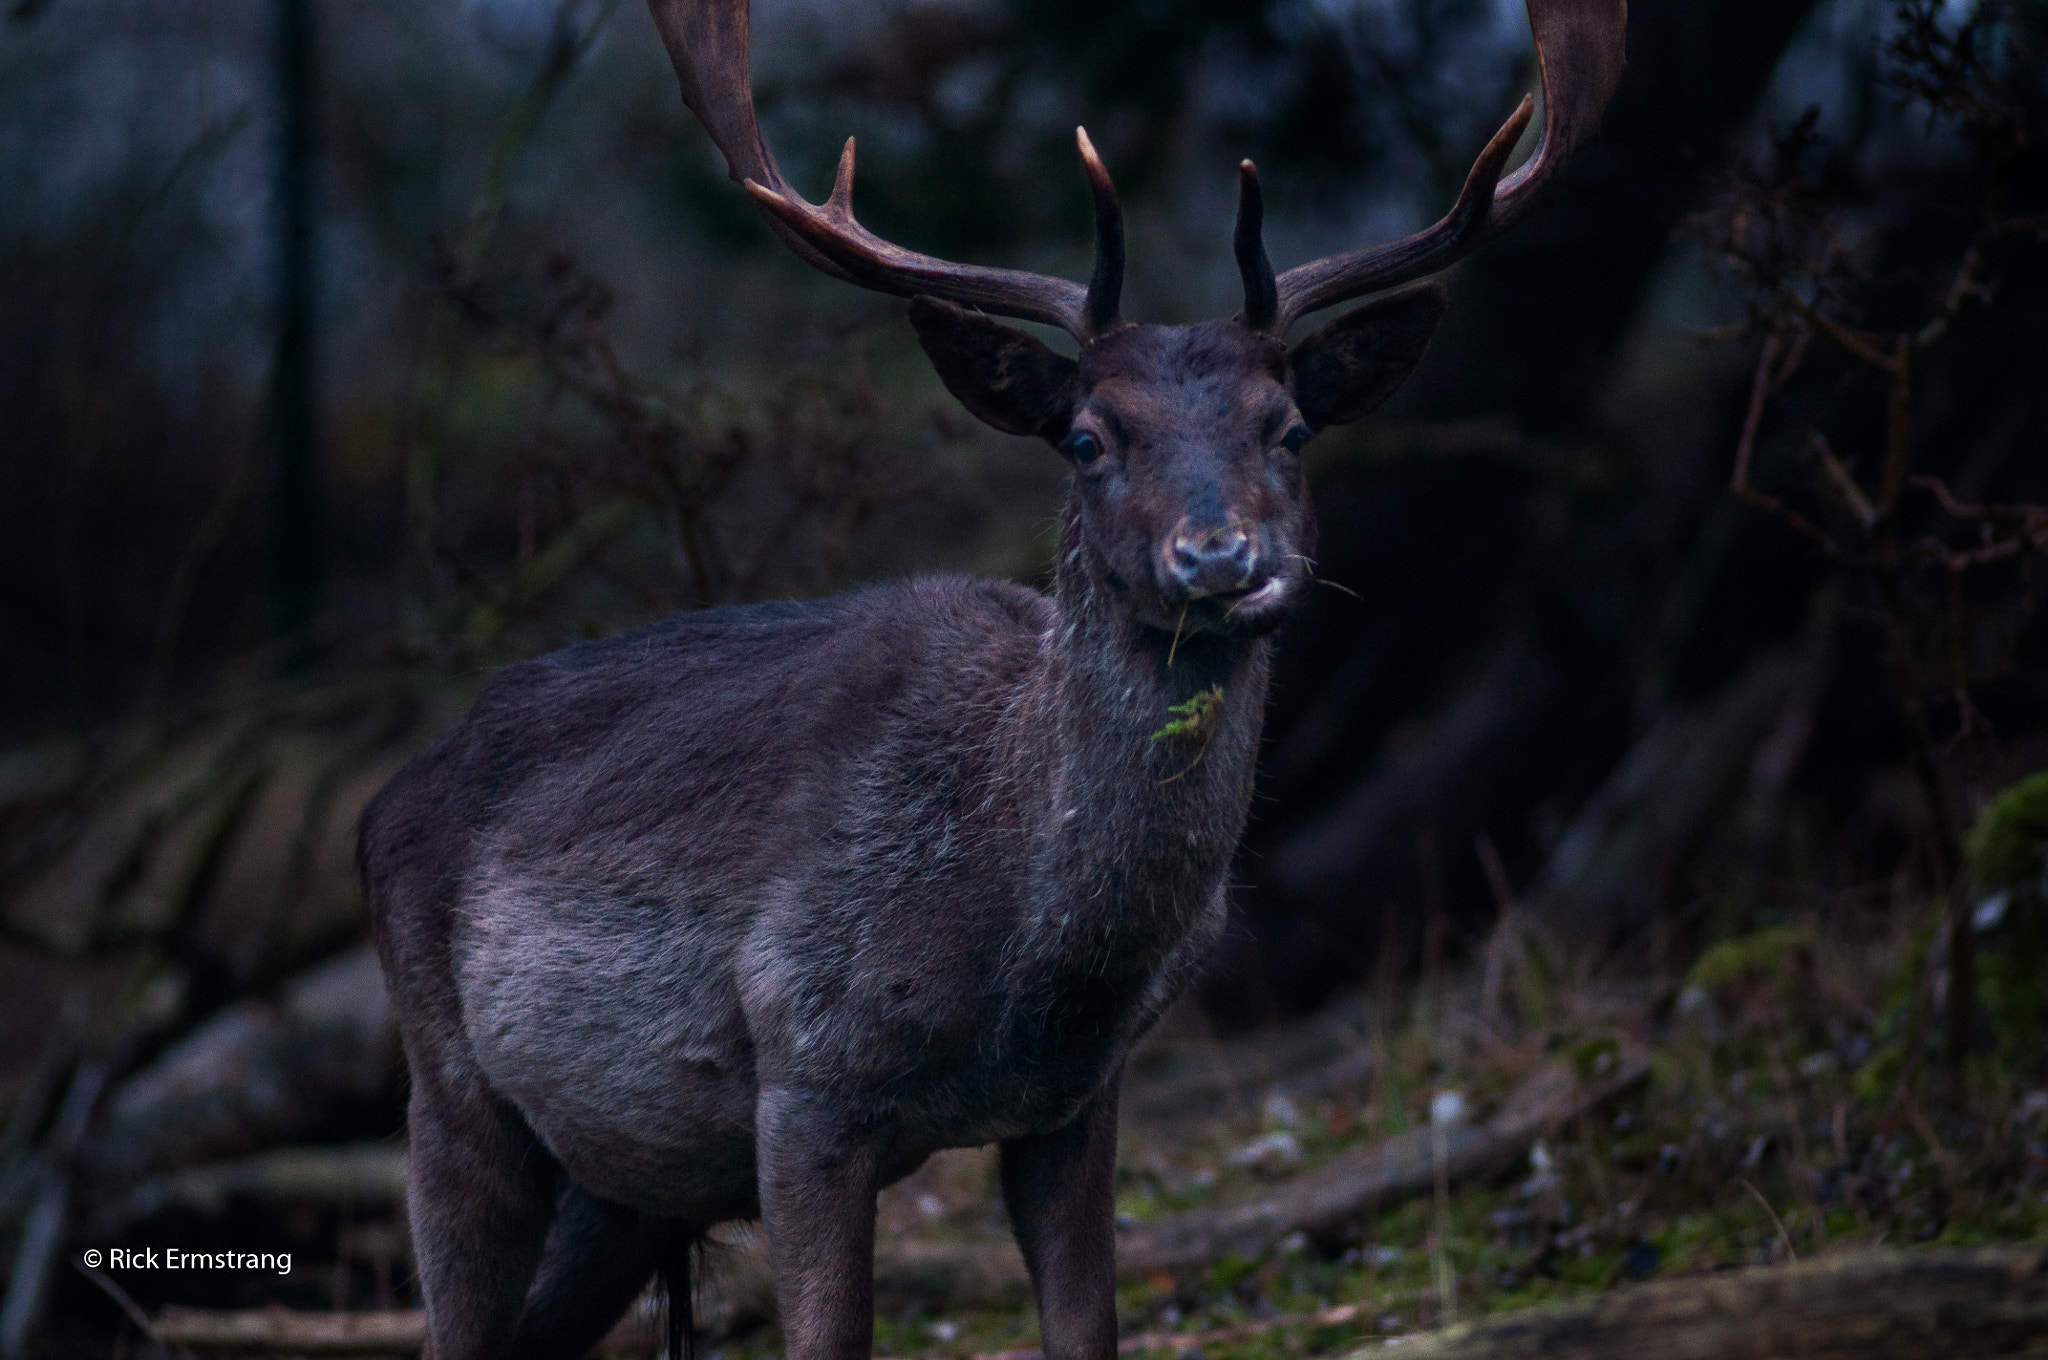 AF Nikkor 180mm f/2.8 IF-ED sample photo. Deer photography